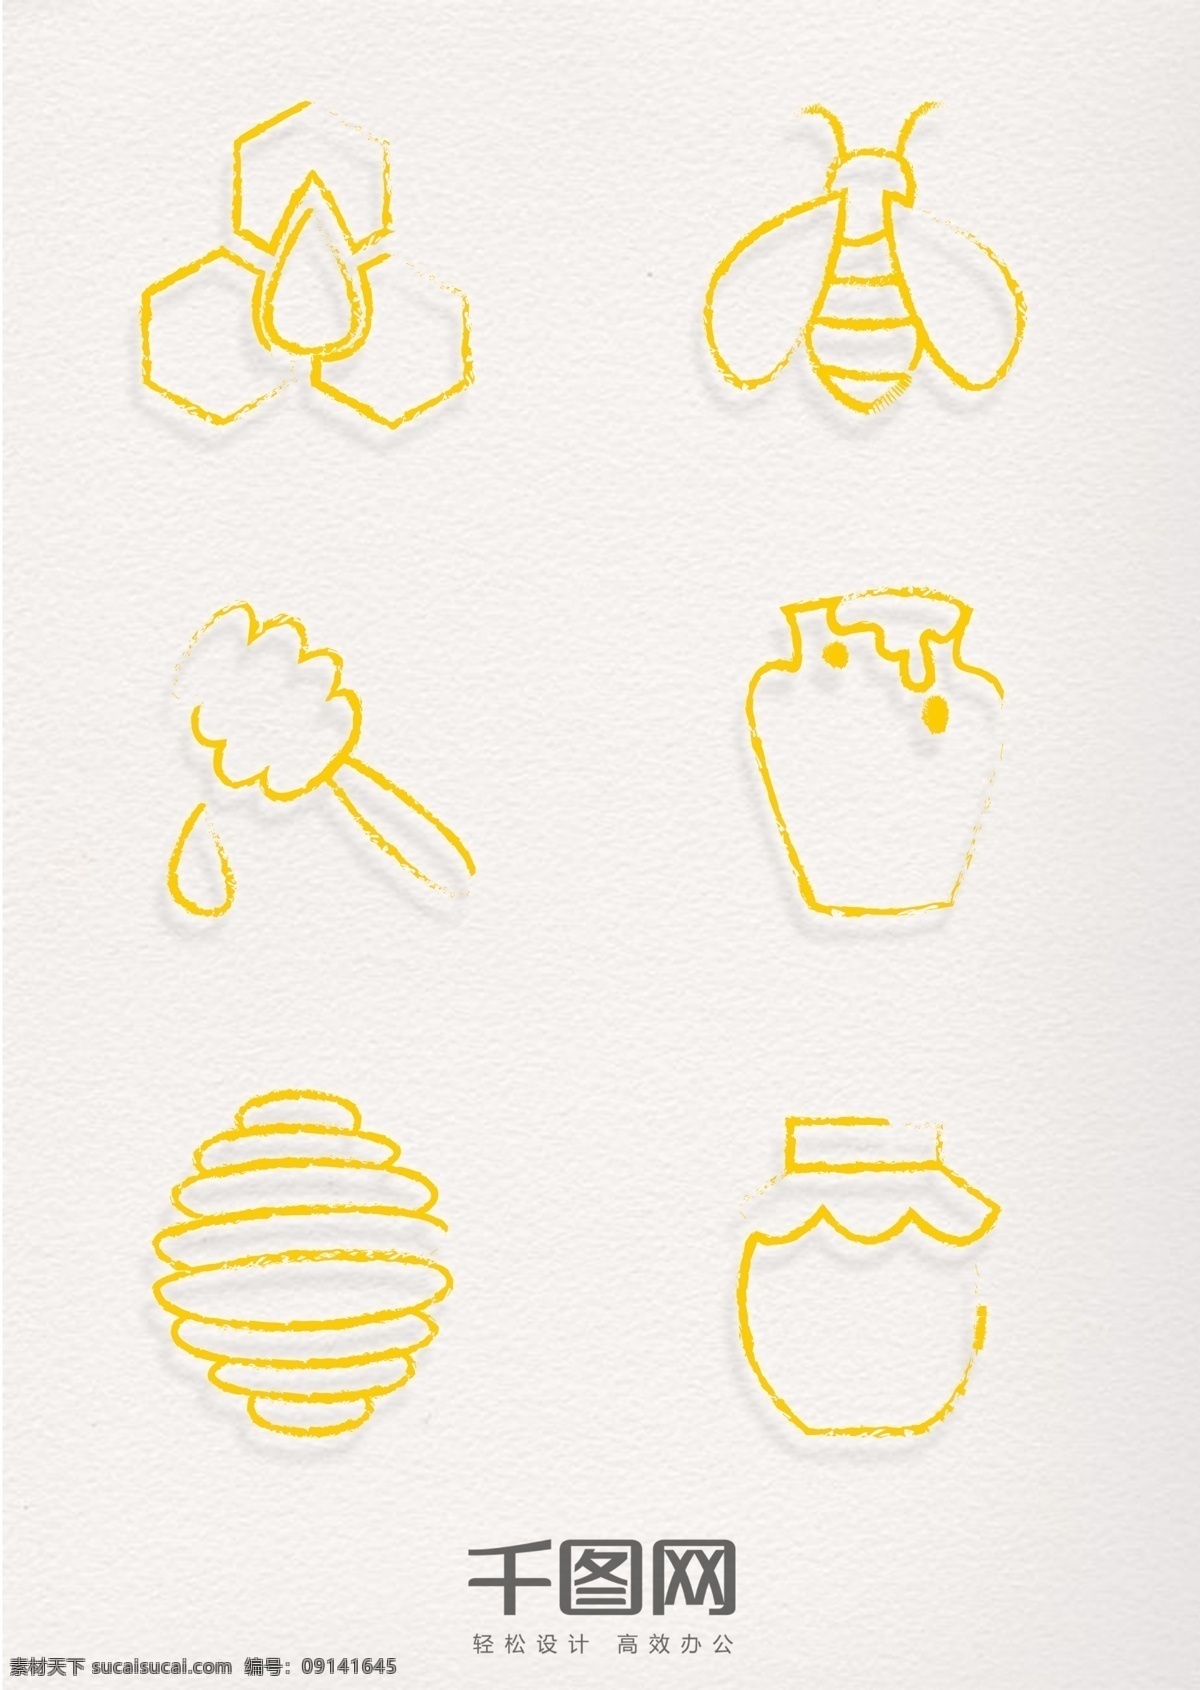 手绘 风格 蜜蜂 元素 金色 印章 手绘风格 线性 简约线条 蜂蜜 蜂巢 蜂窝 蜜蜂元素 蜜蜂印章